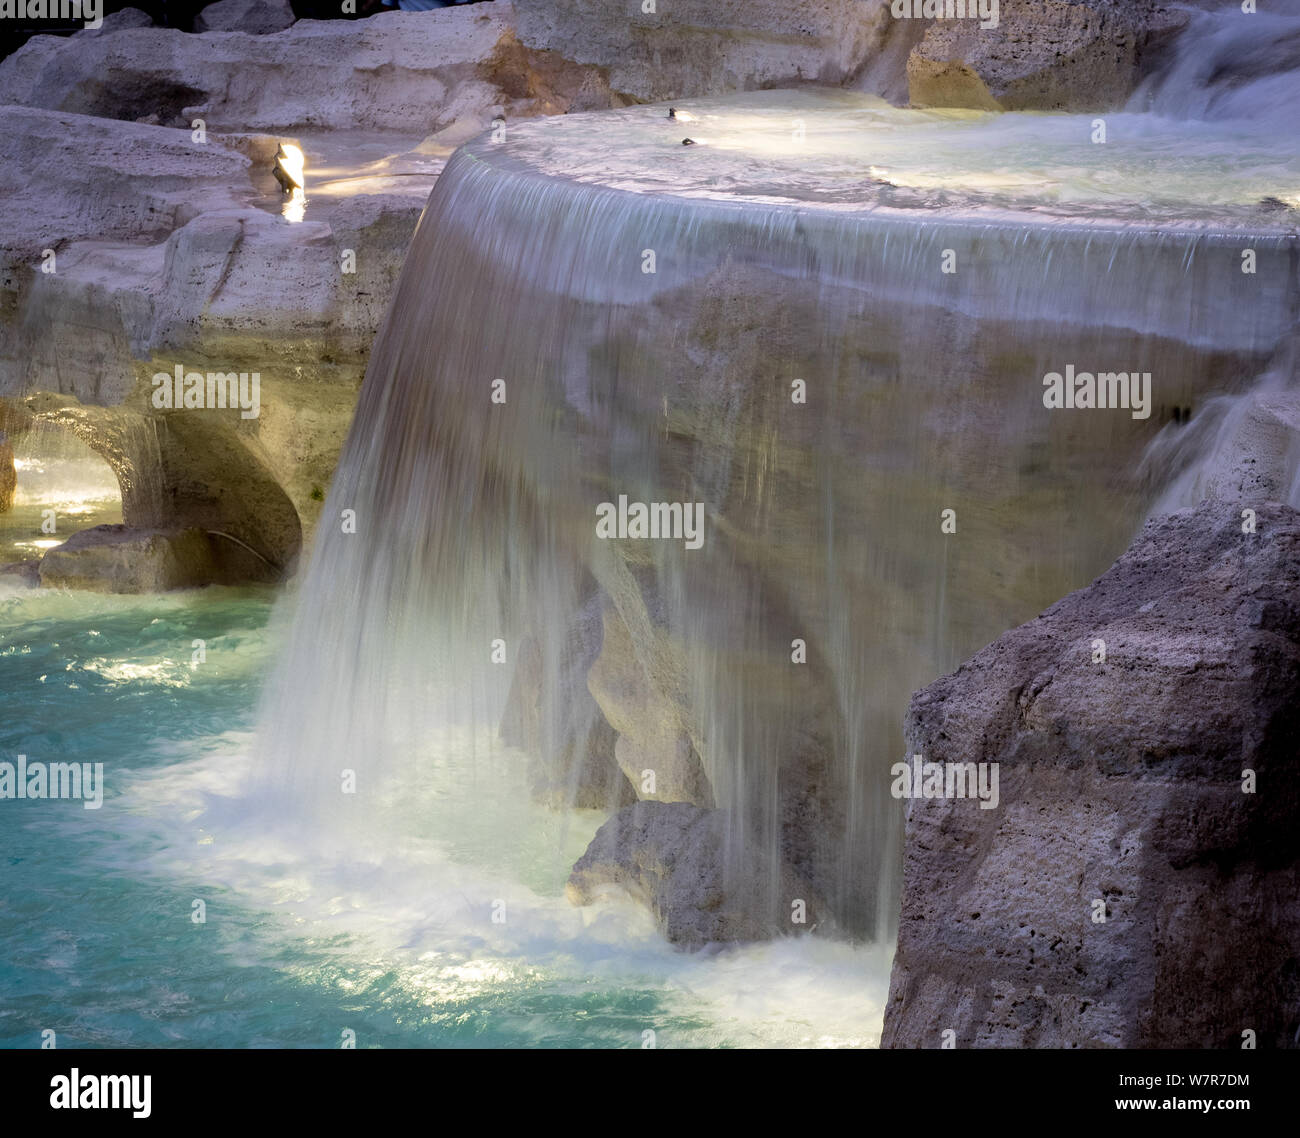 Cascade d'eau, une partie de la fontaine de Trevi (Fontana di Trevi), Rome Banque D'Images